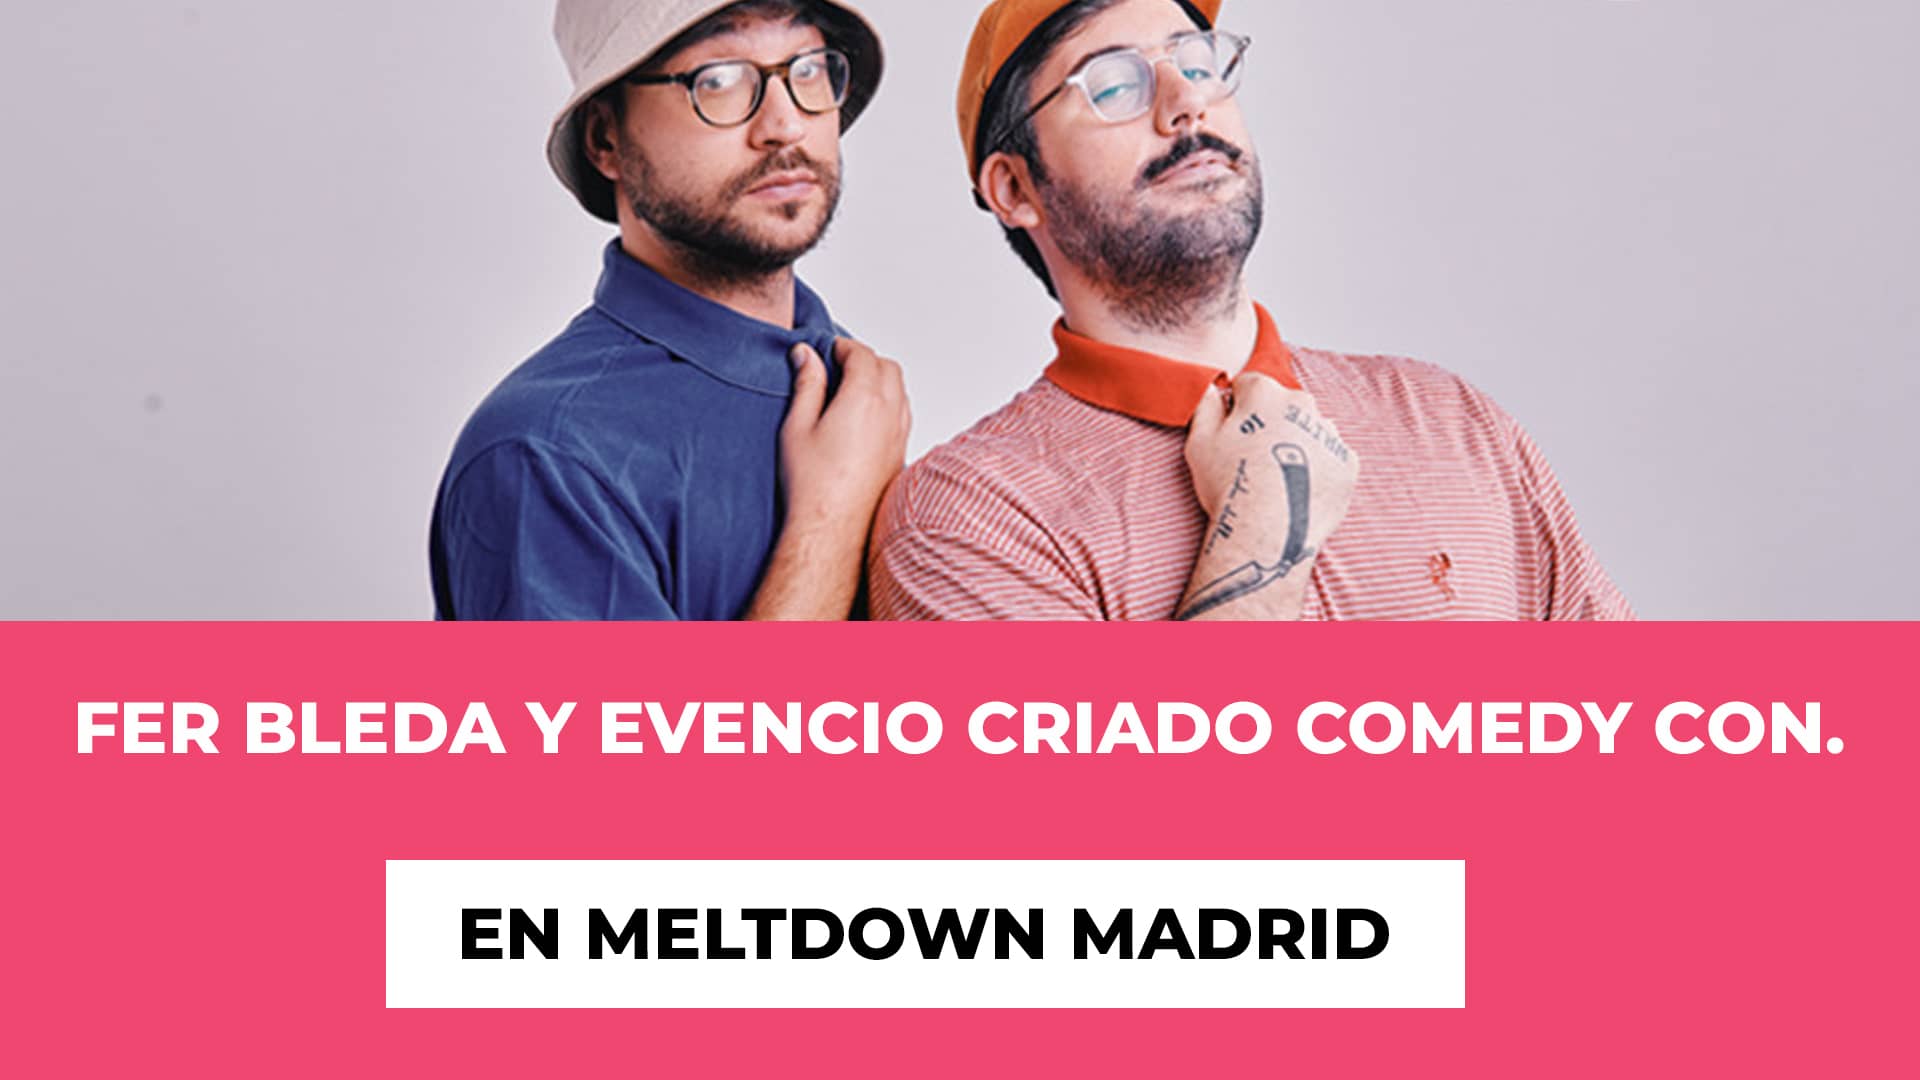 Fer Bleda y Evencio Criado Comedy Con. en Meltdown Madrid - Si buscas risas - Fecha y lugar de la comedia - Precios entradas